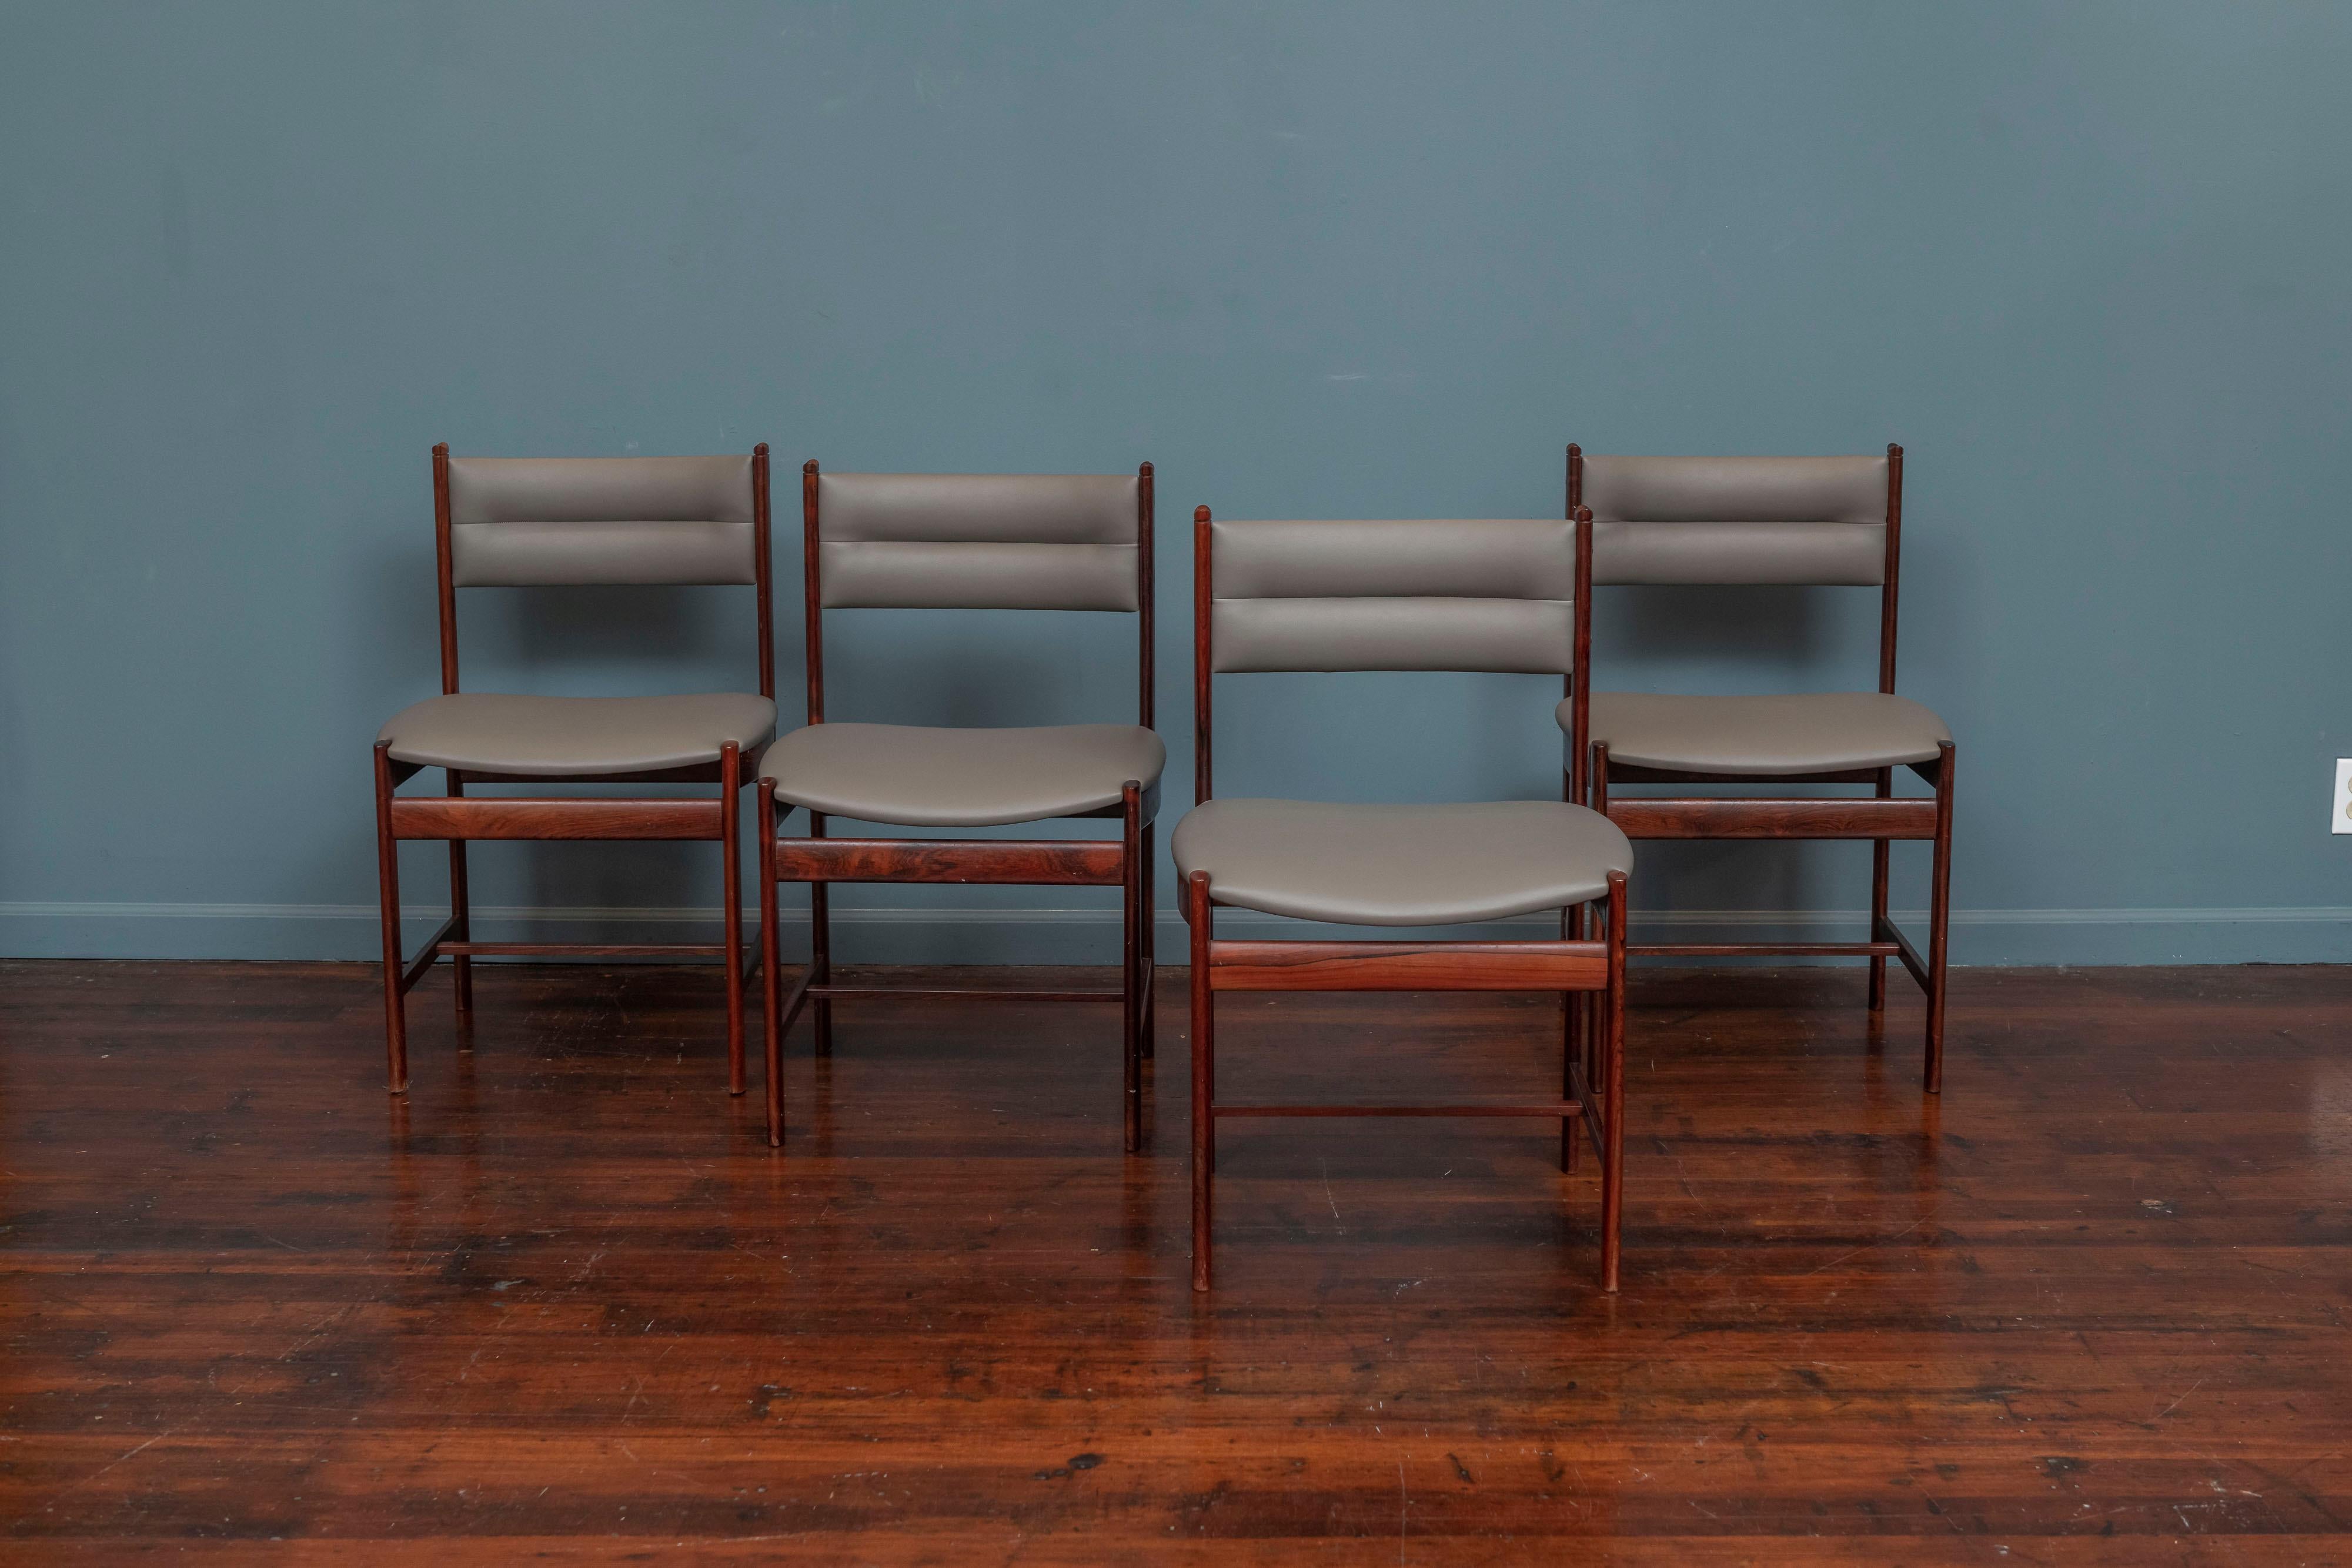 Ensemble de quatre chaises de salle à manger en bois de rose de style scandinave moderne, Danemark.
 Nouvellement recouvert d'un revêtement en vinyle gris mastic avec des cadres en bois de rose massif de finition originale.